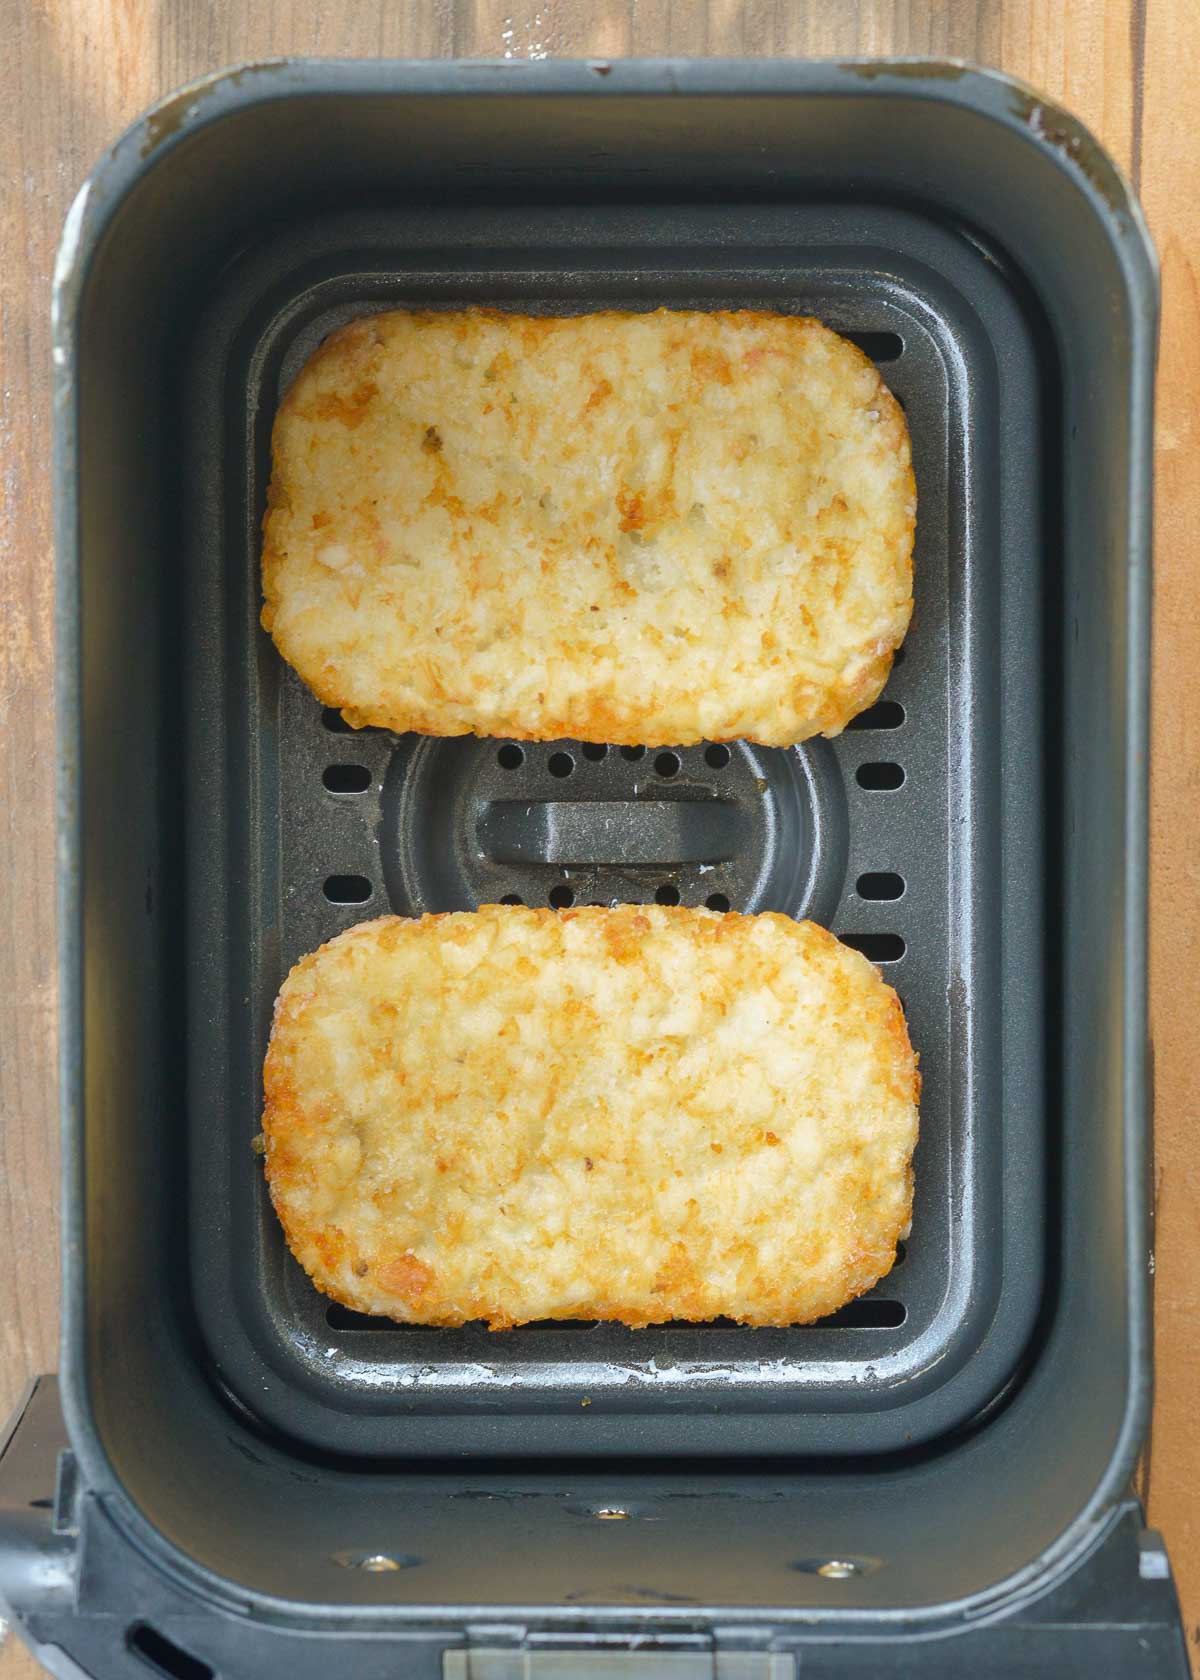 uncooked, frozen hash brown patties in an air fryer basket